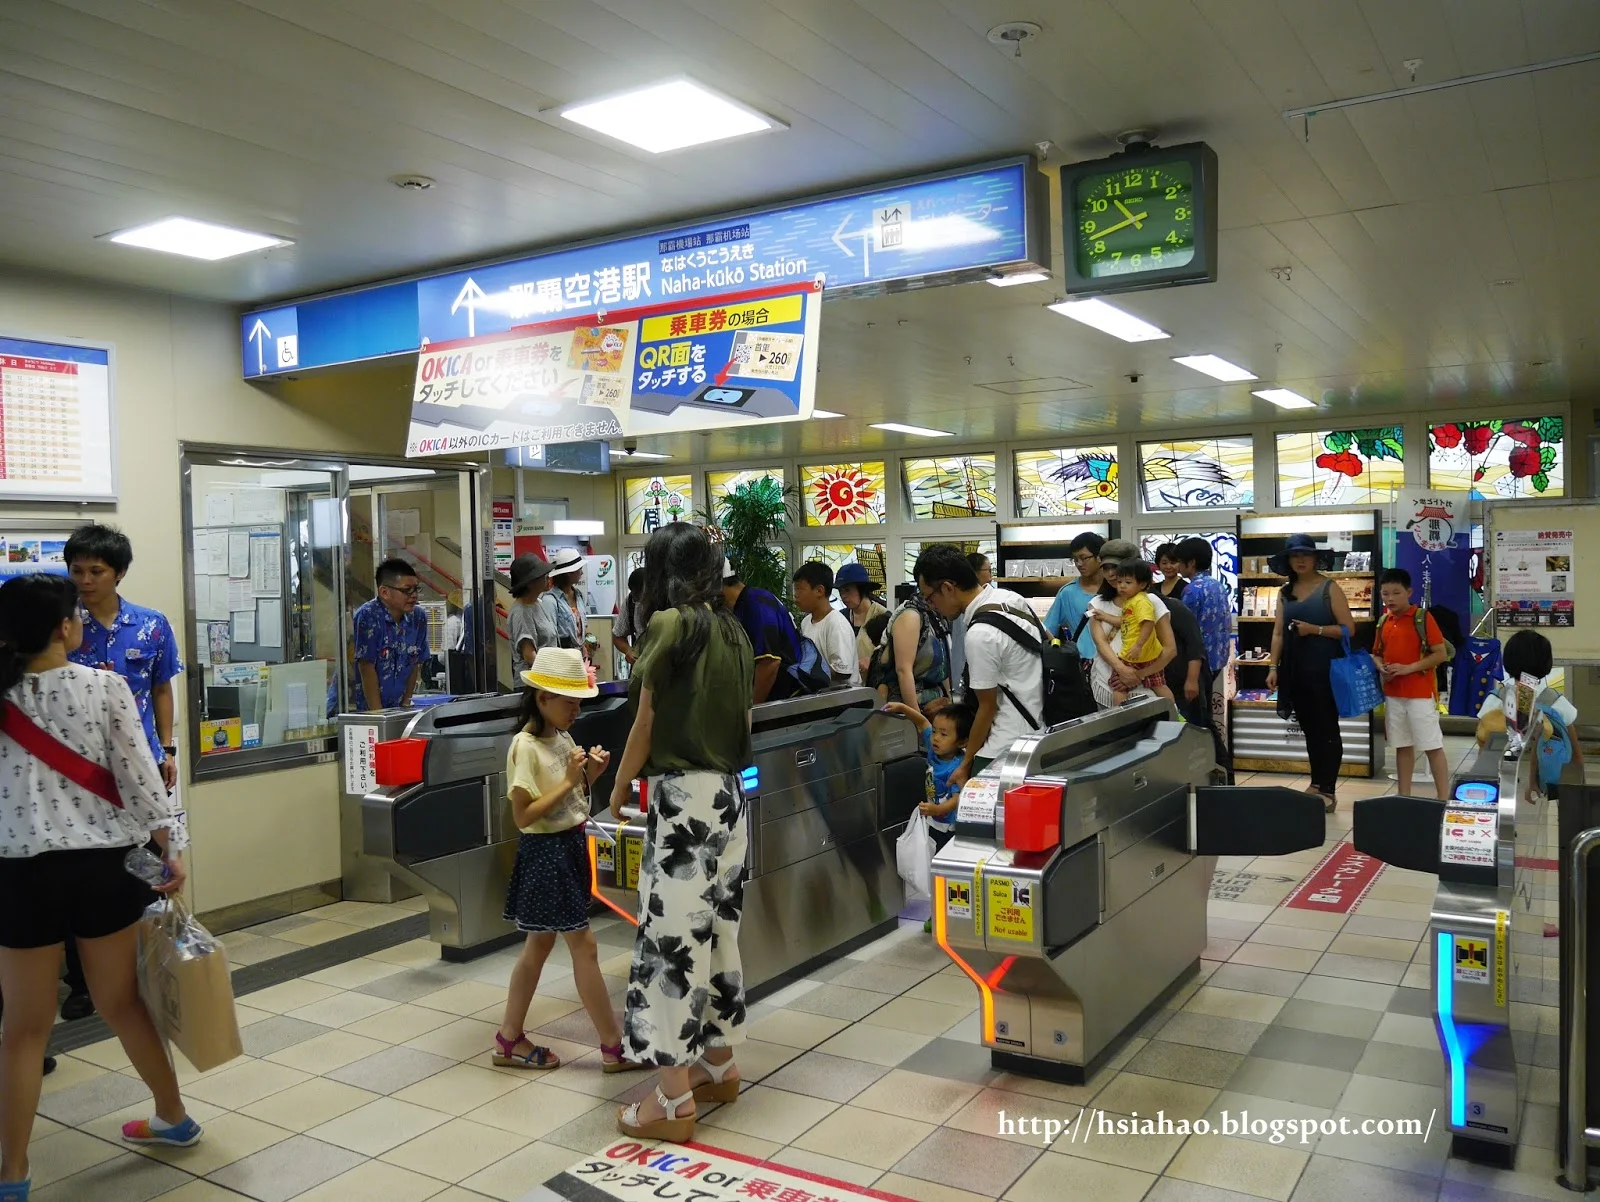 沖繩-交通-單軌電車-電車站-教學-自由行-旅遊-旅行-Okinawa-yui-rail- transport-train